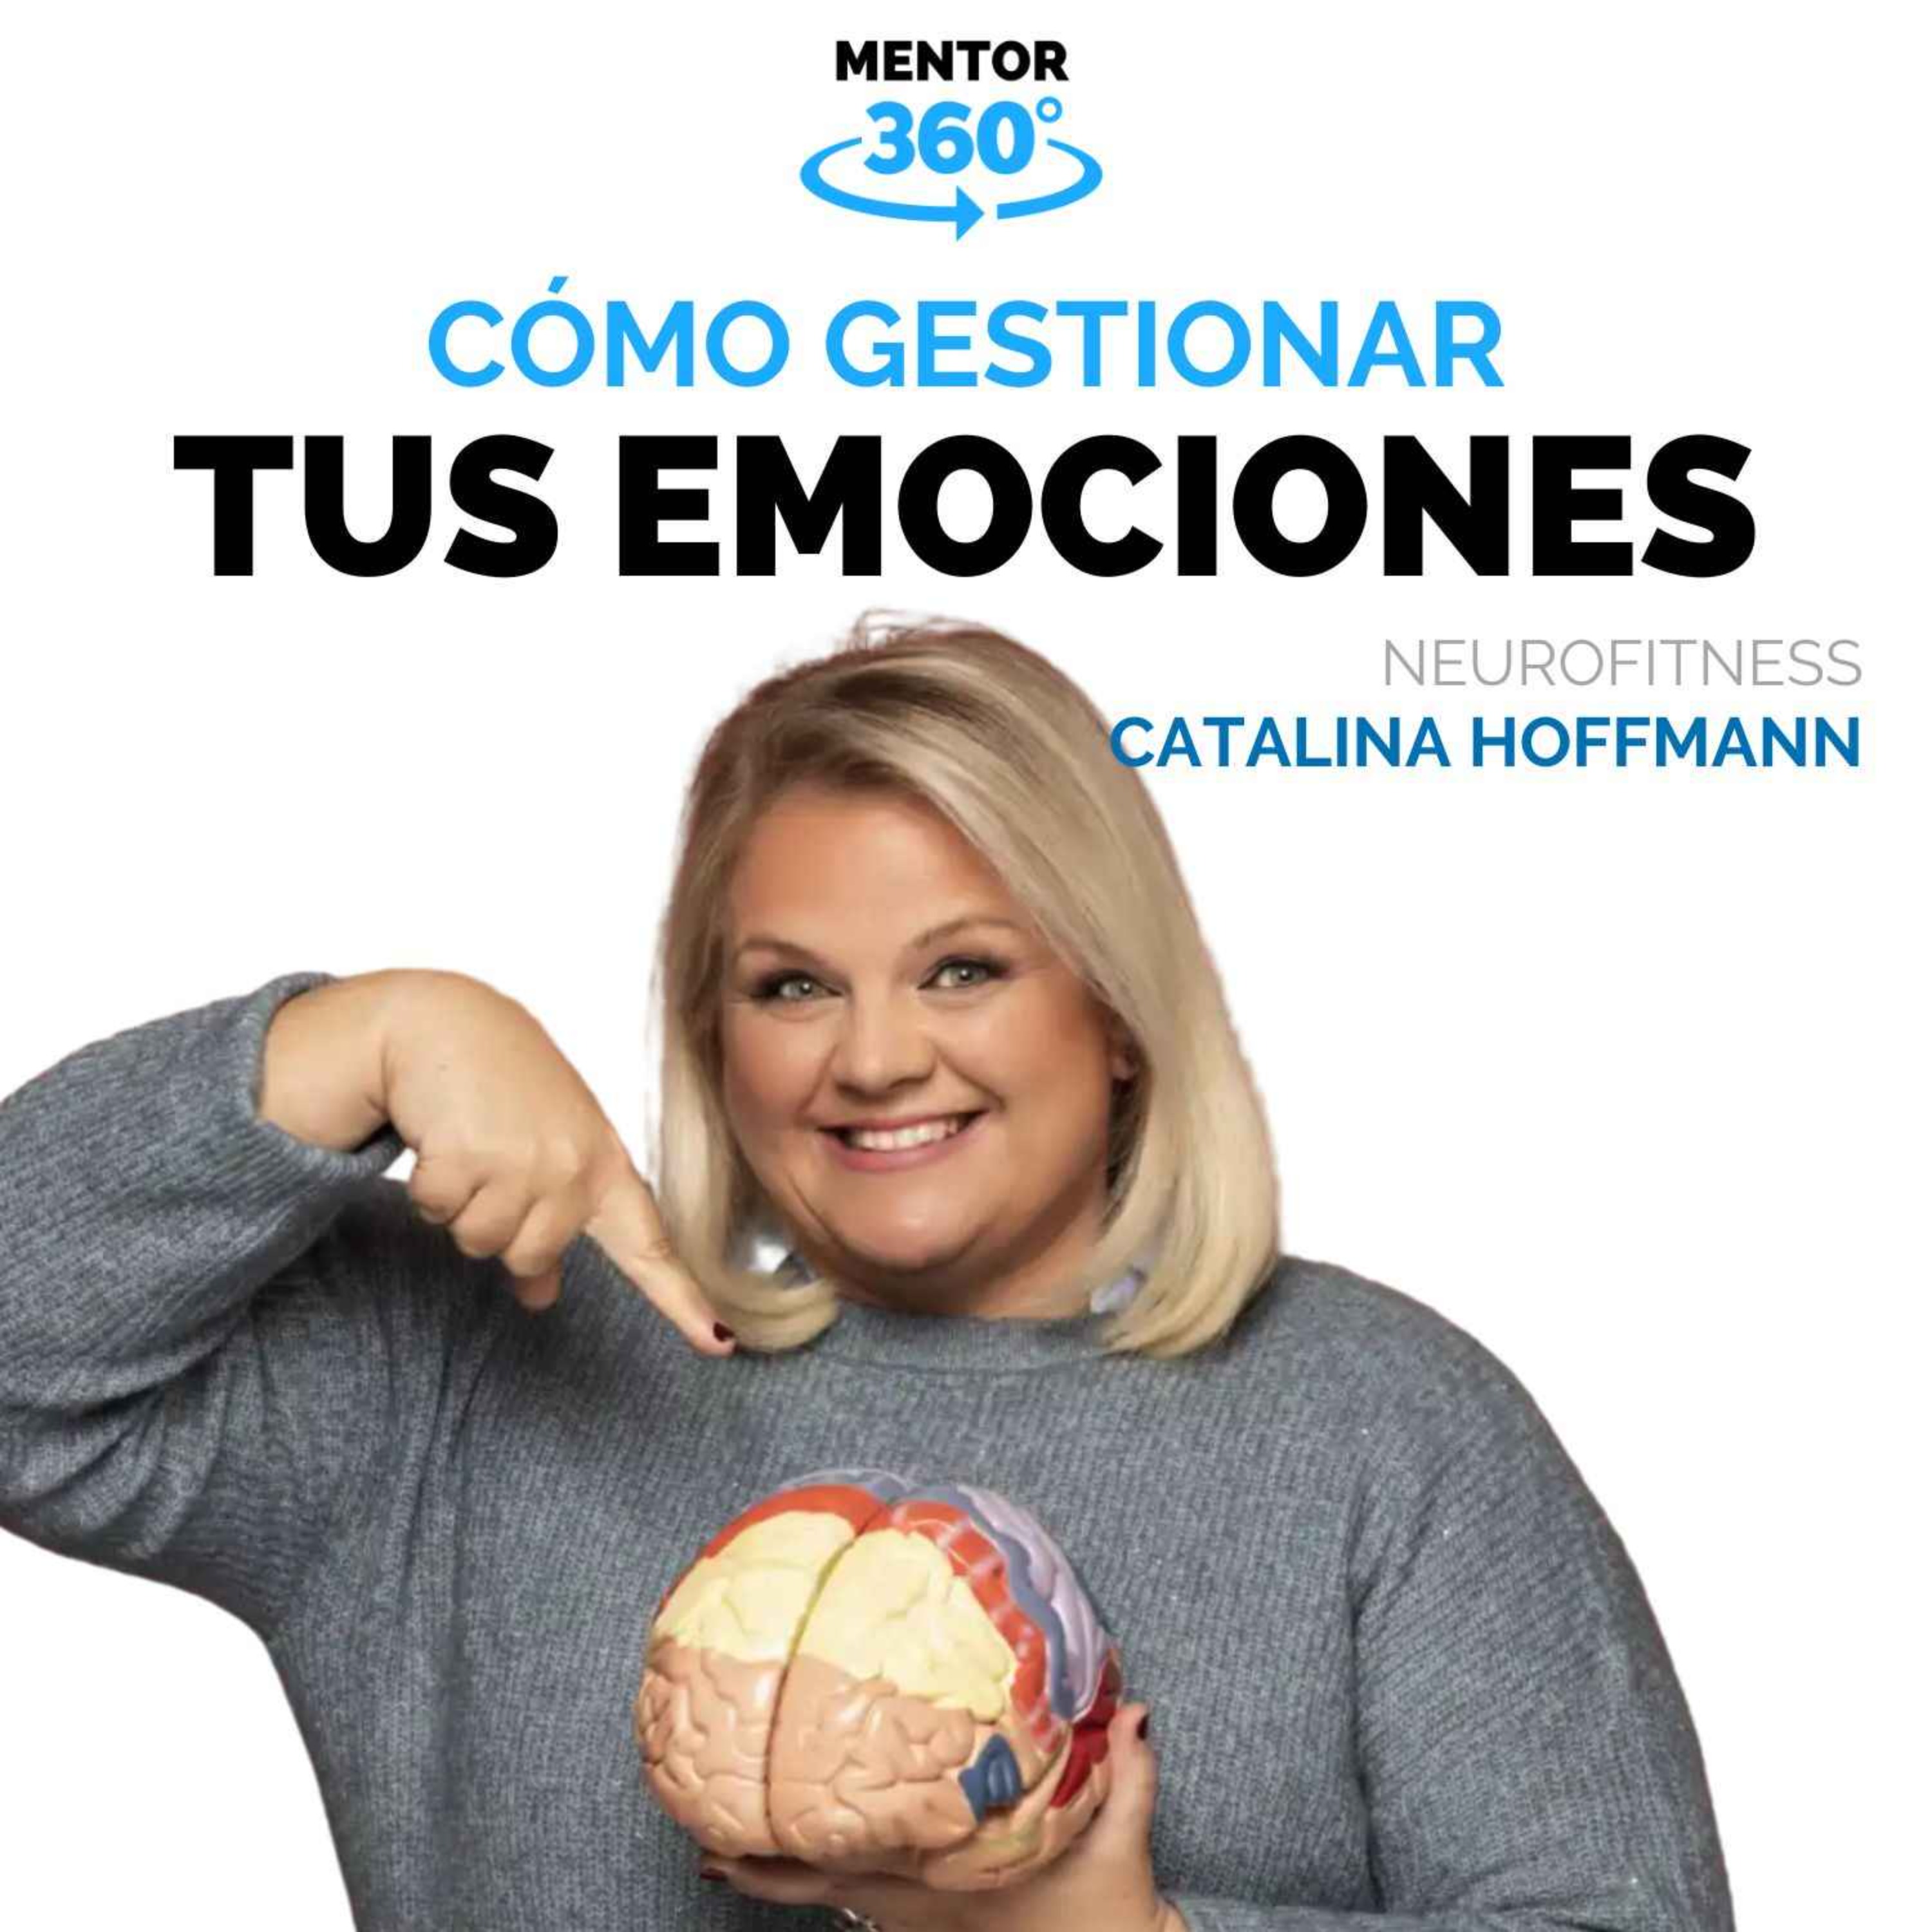 Cómo Gestionar Tus Emociones - Catalina Hoffmann - Neurofitness - MENTOR360